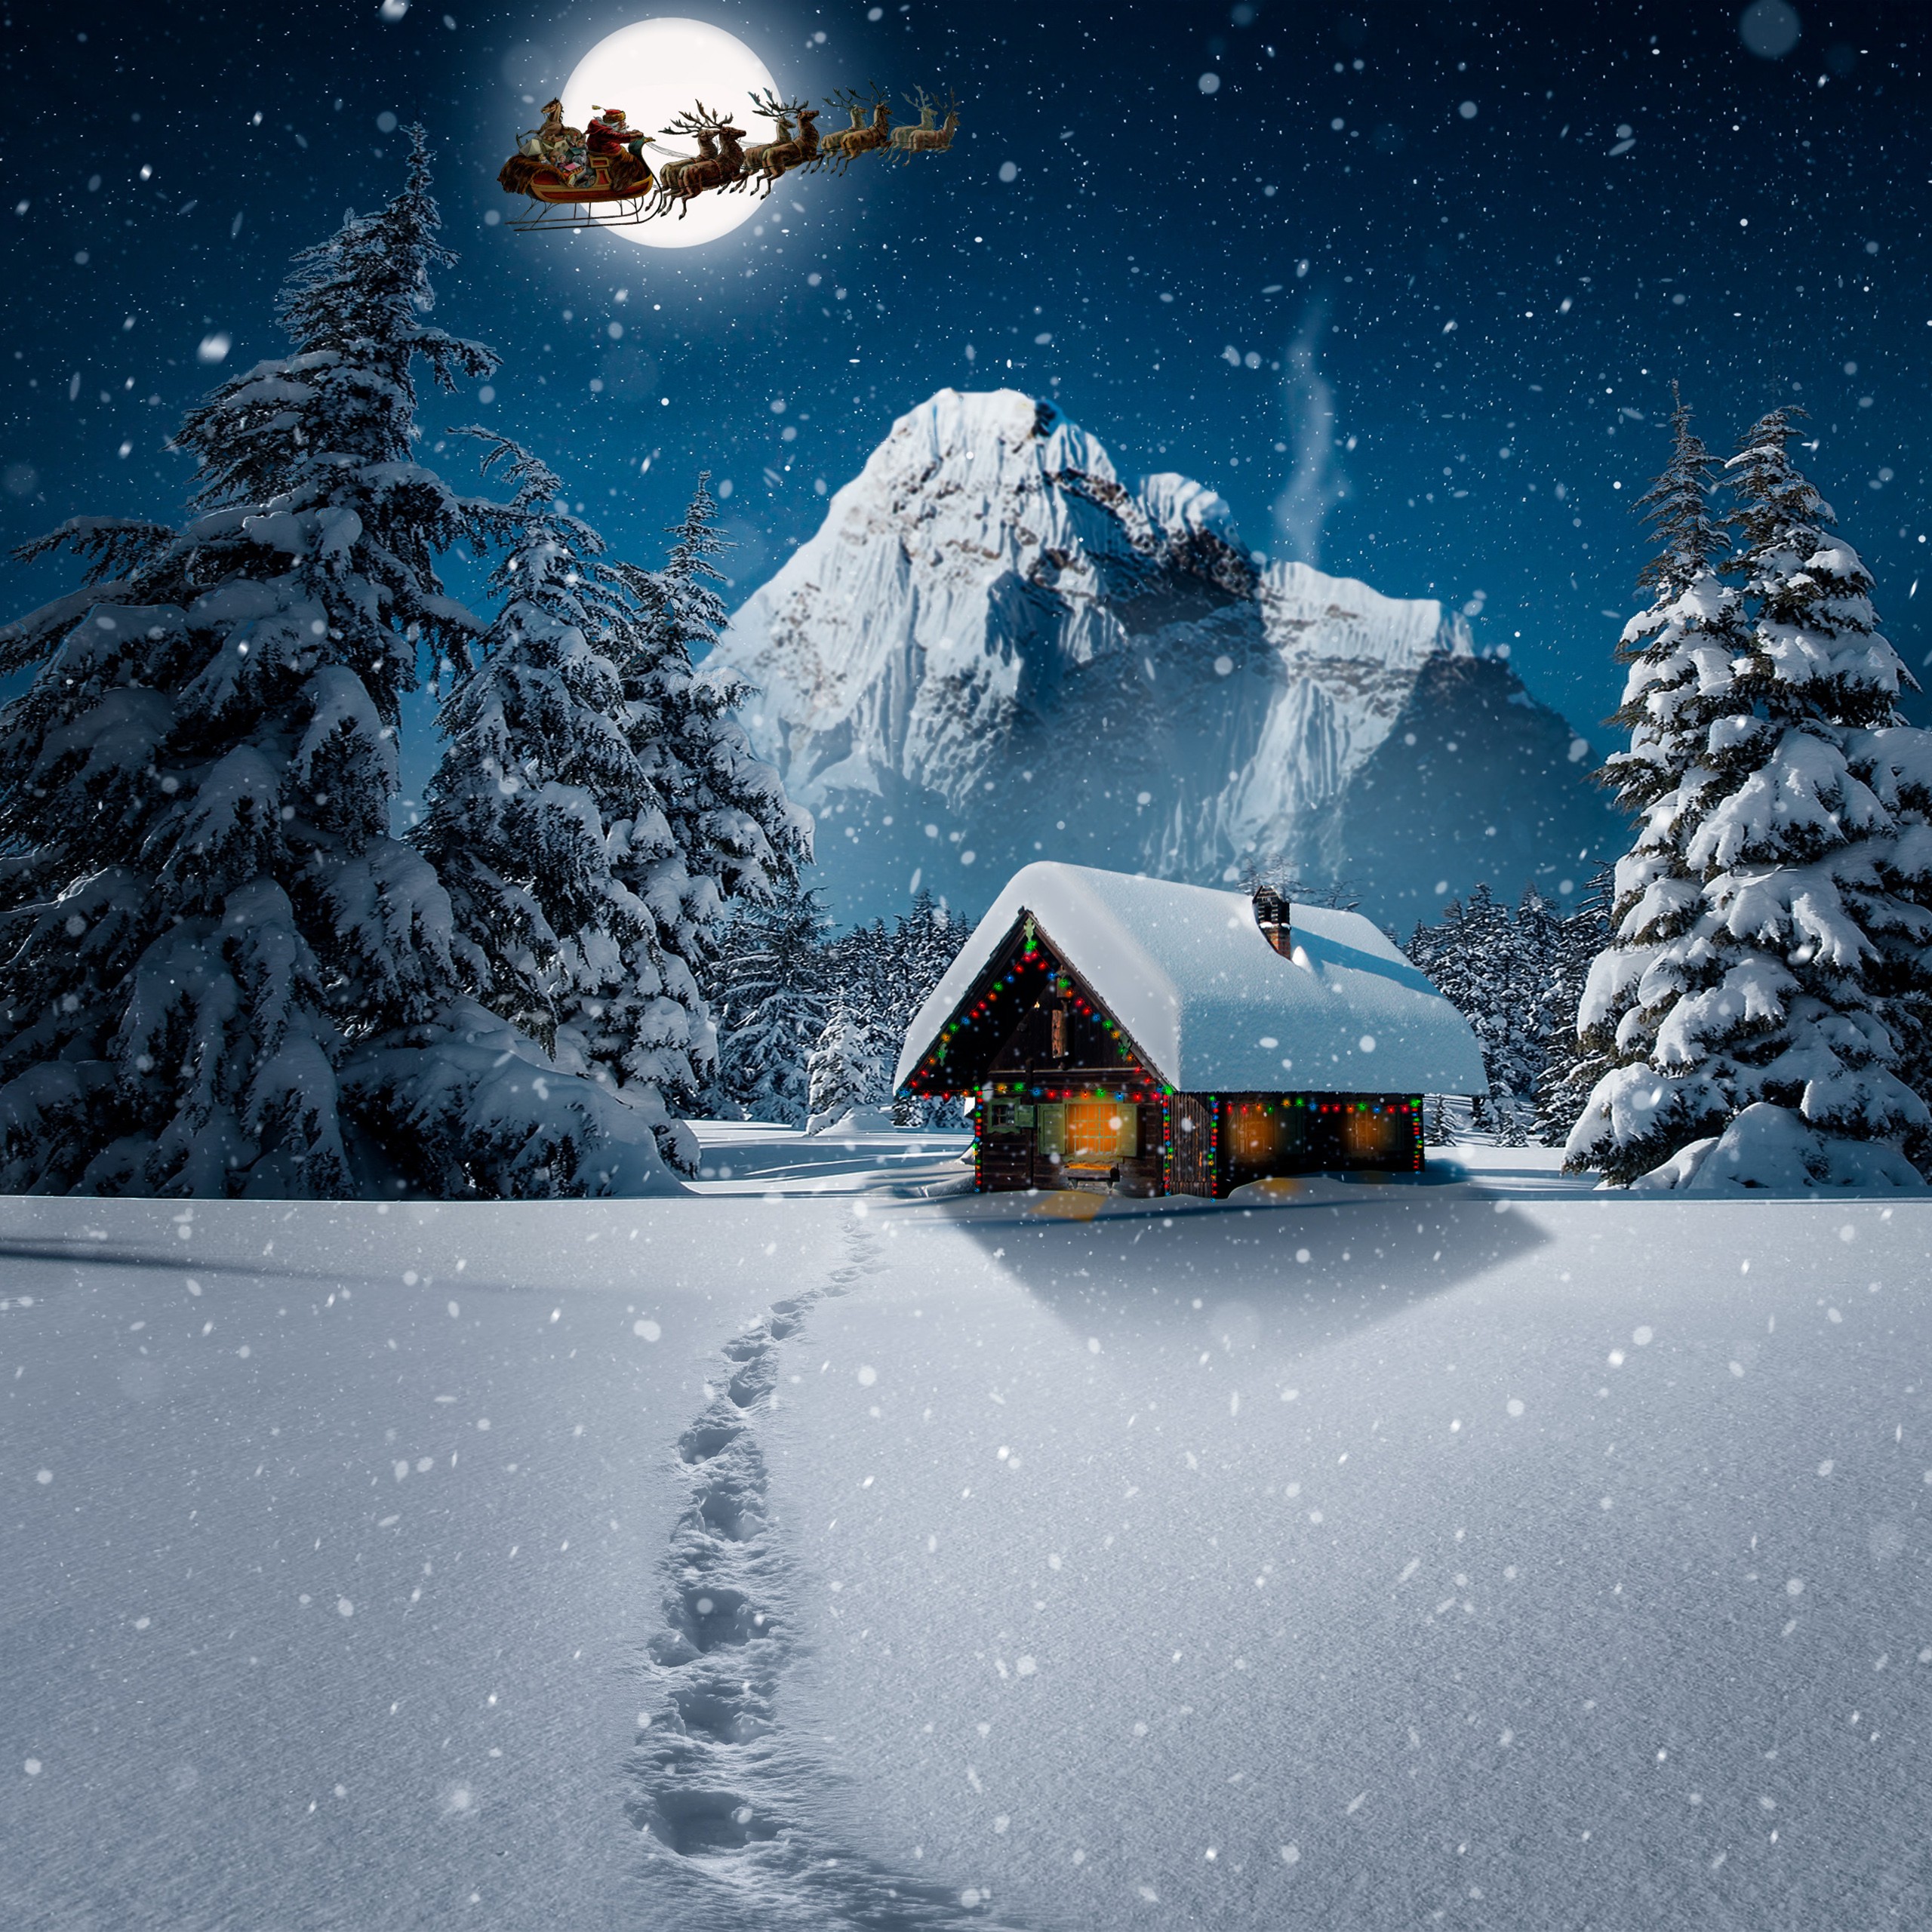 Mùa đông đã đến và bạn muốn tạo cho mình một nền tảng 4K độc đáo để thưởng thức lễ hội tuyết trắng bên ngoài? Hãy khám phá những nền tảng 4K miễn phí cho iPad tại Winter iPad Wallpapers. Với những hình ảnh tuyệt đẹp về cảnh tuyết rơi và những cây thông trang trí đầy ấn tượng, bạn sẽ cảm nhận được không khí Giáng sinh đến rất gần.